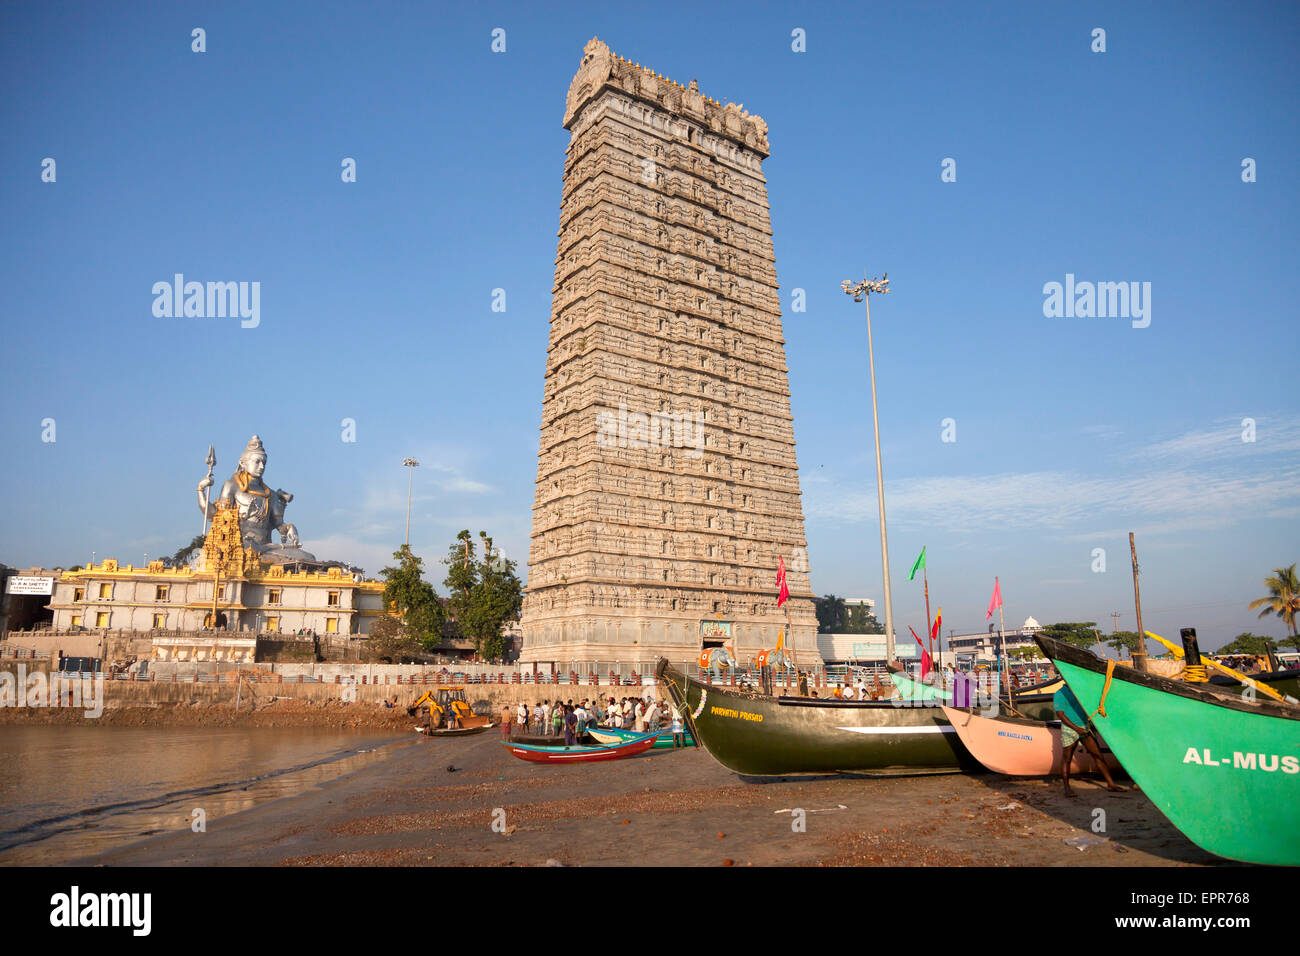 giant gopura and Lord Shiva statue at Murudeshwar temple at the beach in  Murudeshwar, Karnataka, India, Asia Stock Photo